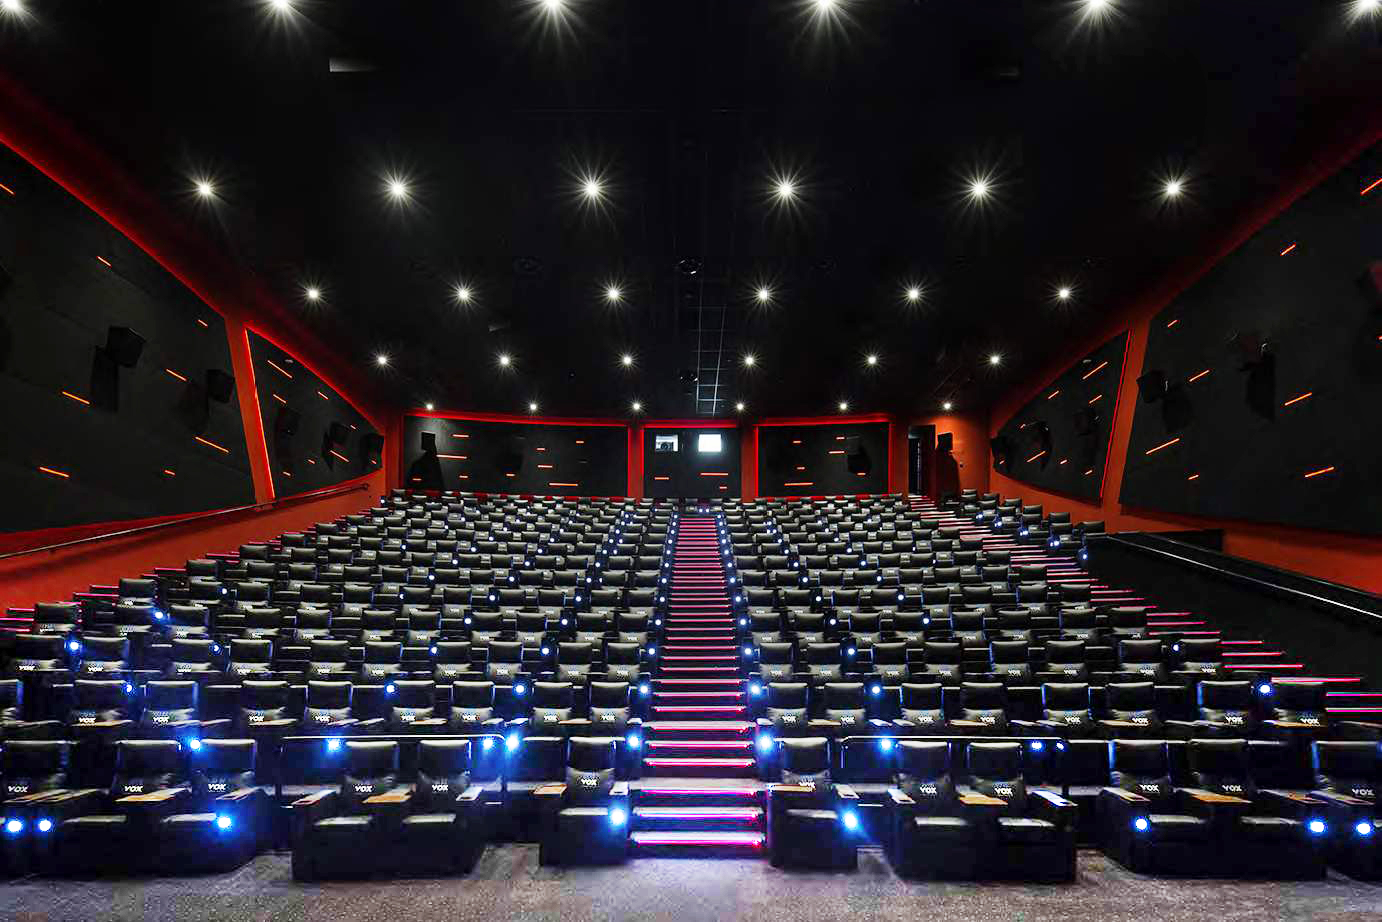 Vox Cinema in Dubai